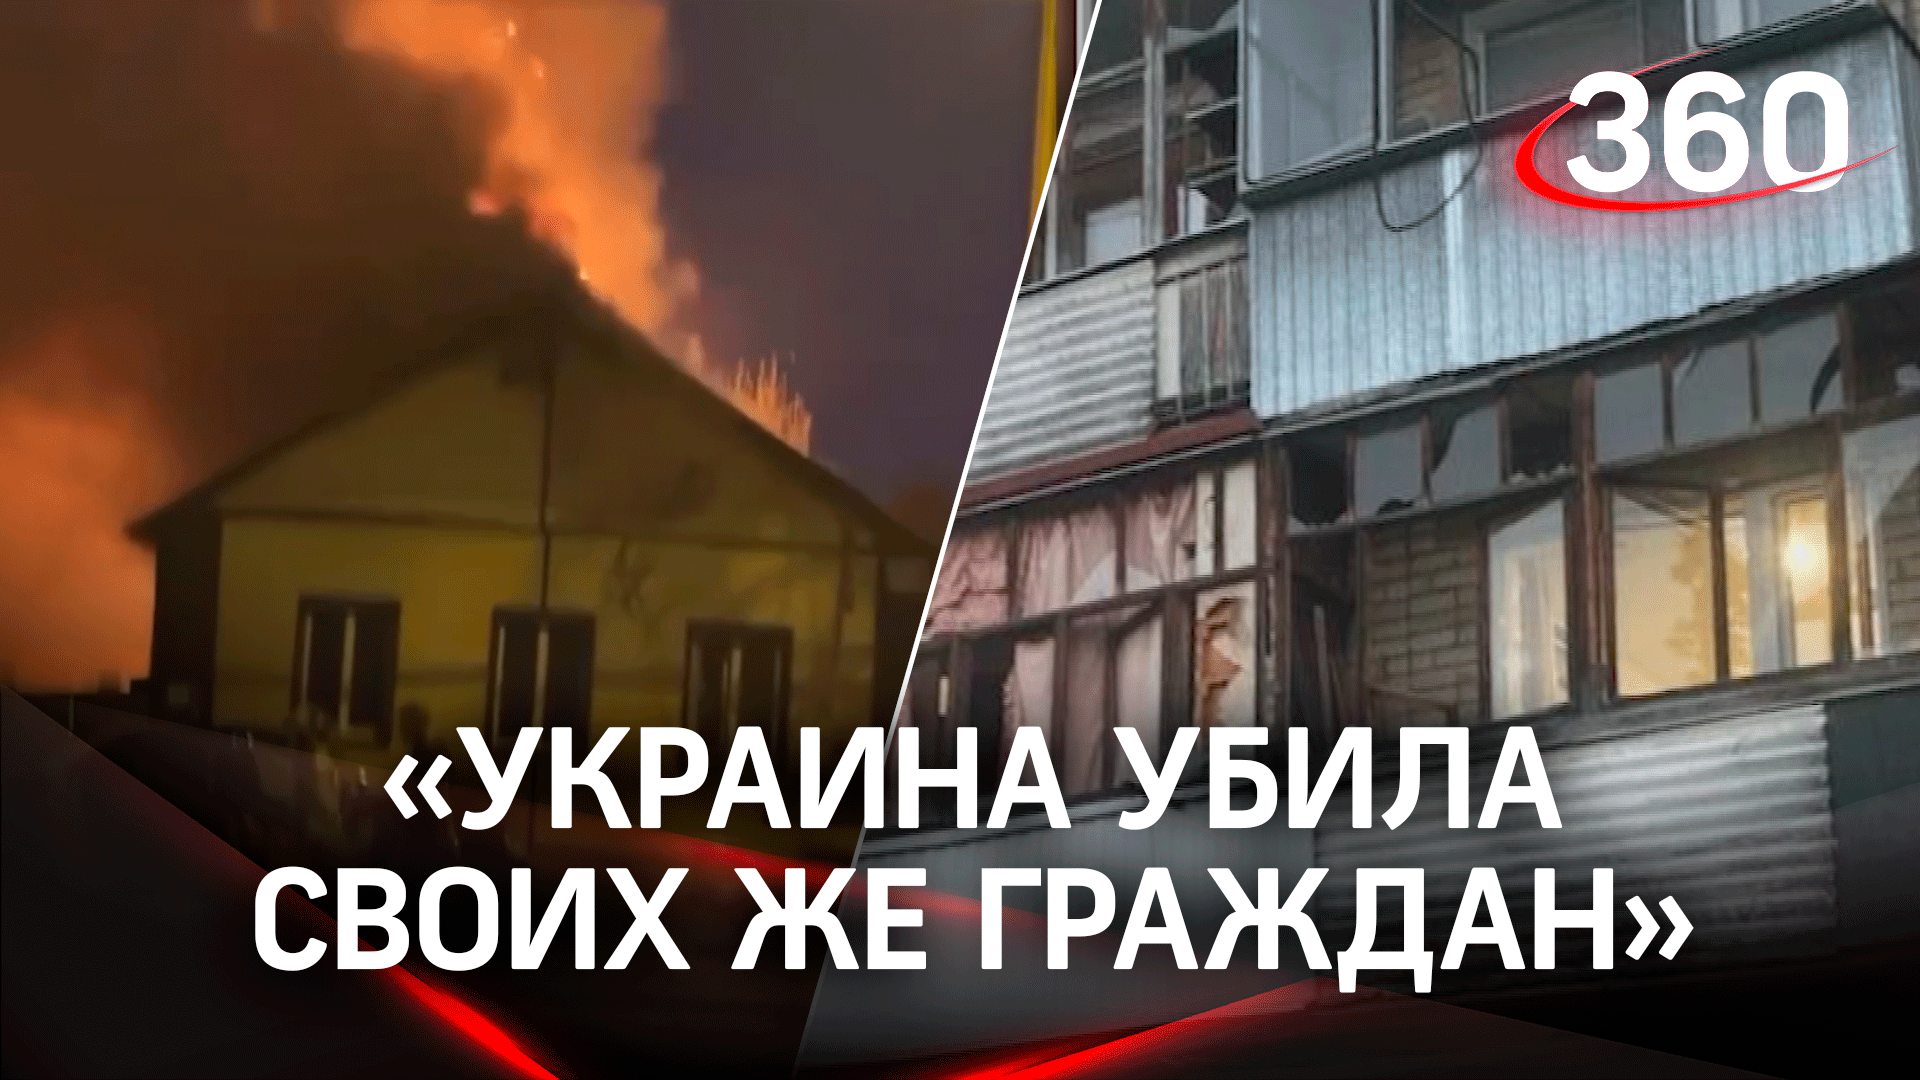 «Киев убил своих же граждан!» Трое из погибших в Белгороде были украинцами - губернатор Гладков